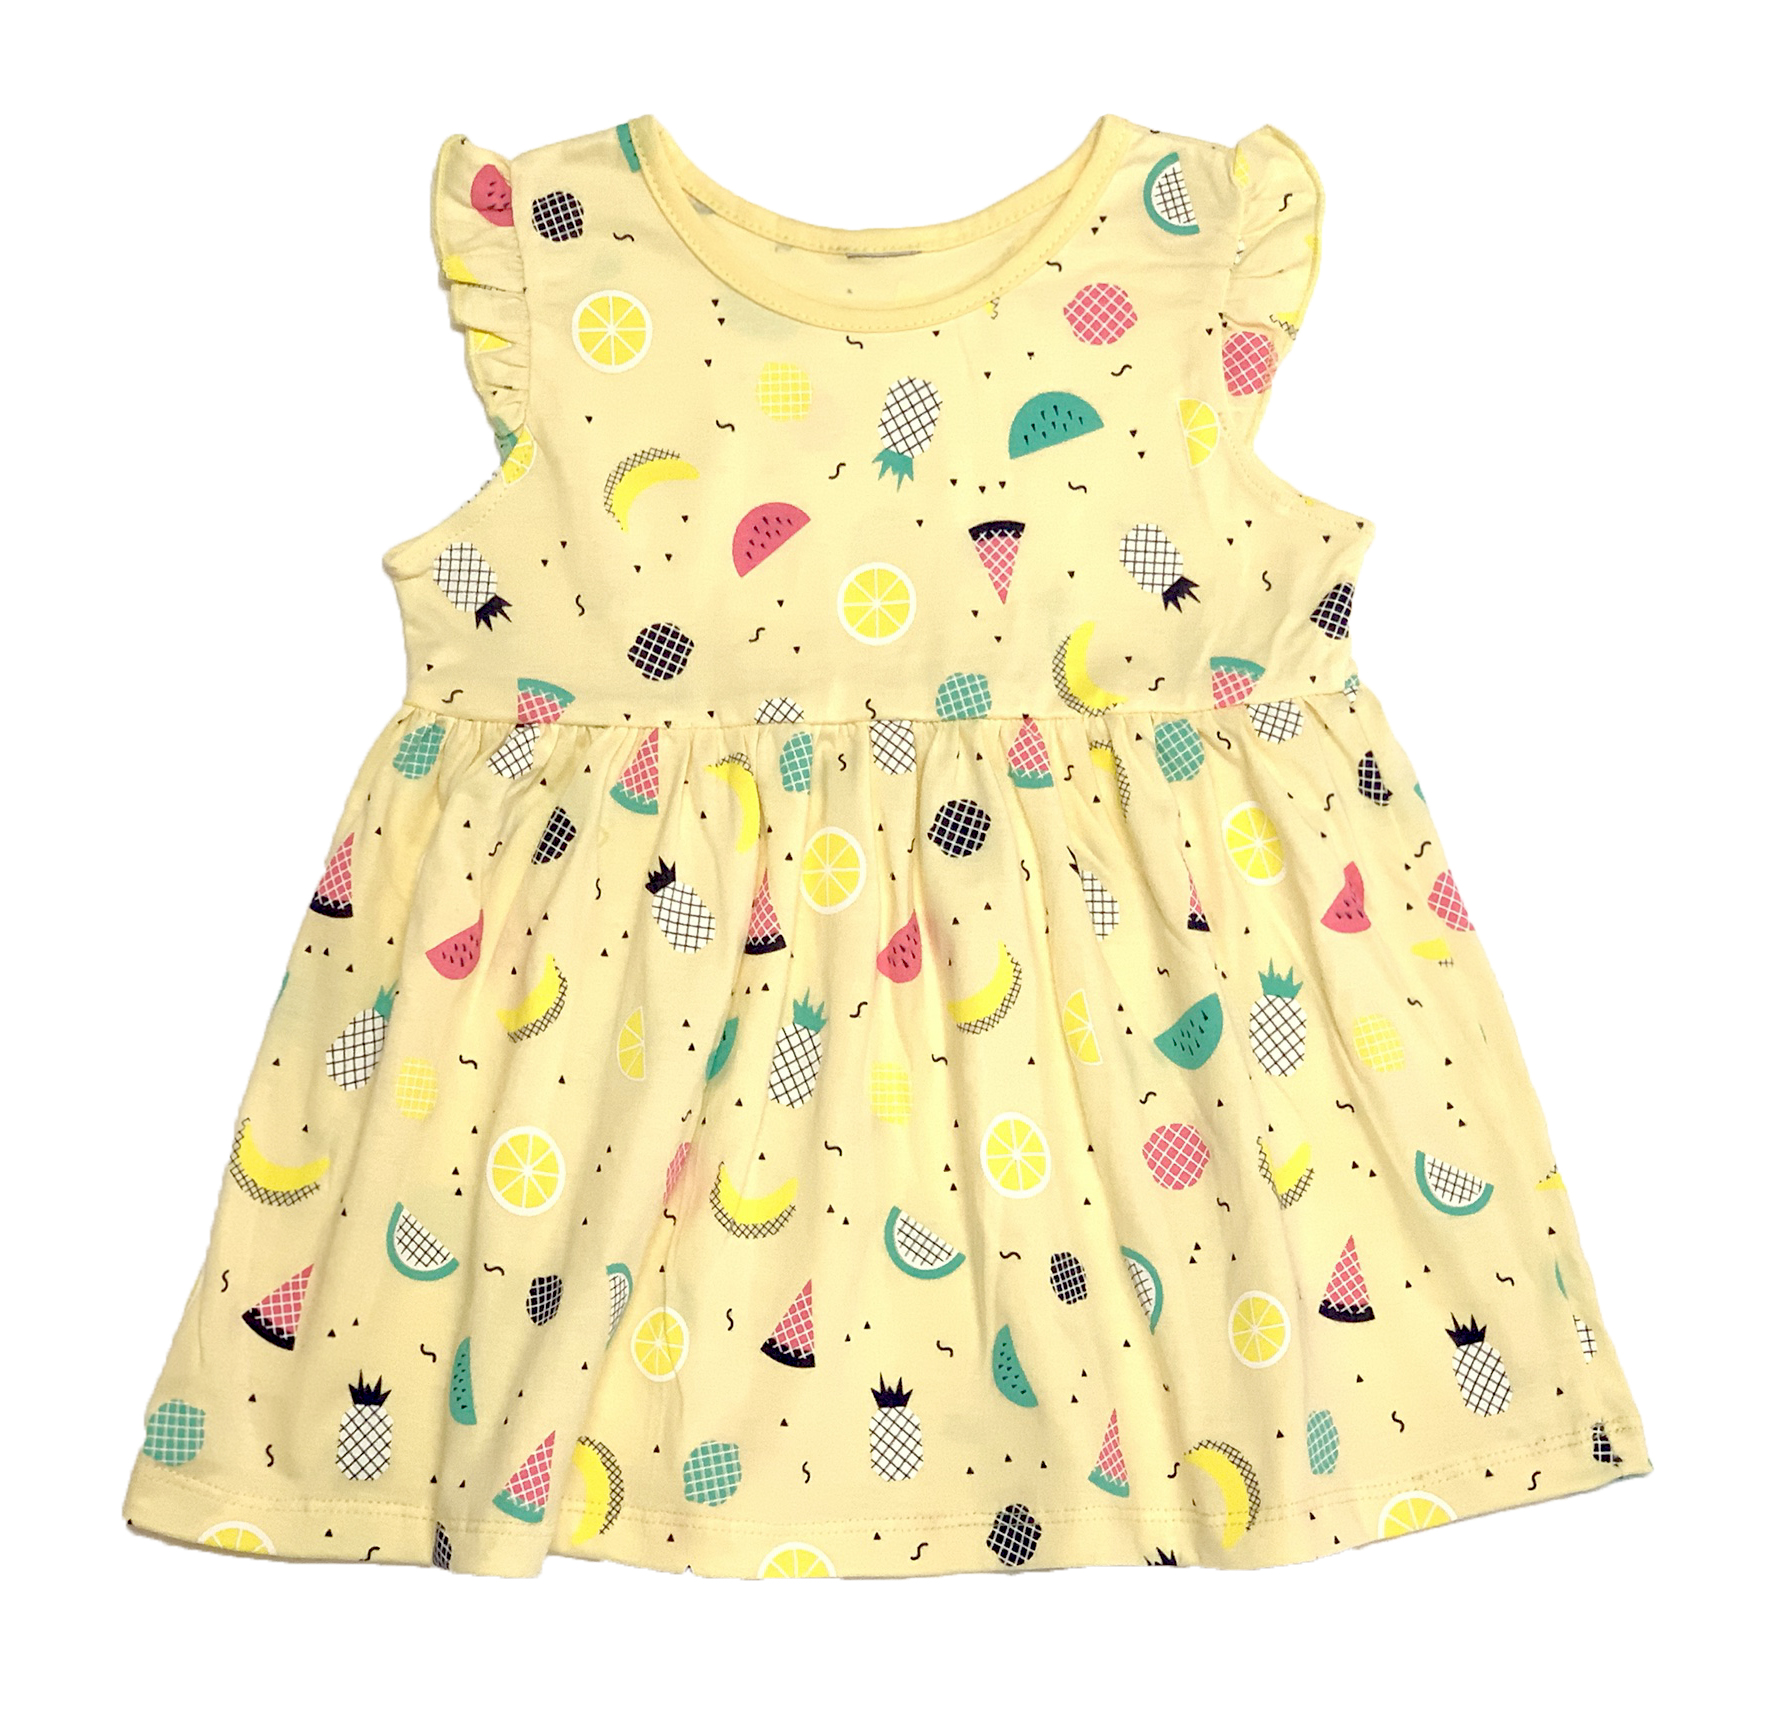 เดรสเด็กหญิงผ้ายืดพิมพ์ลาย fruity ทั้งตัวน่ารักมาก ใส่สบาย ผ้า cotton สีเหลือง  (DG210030)